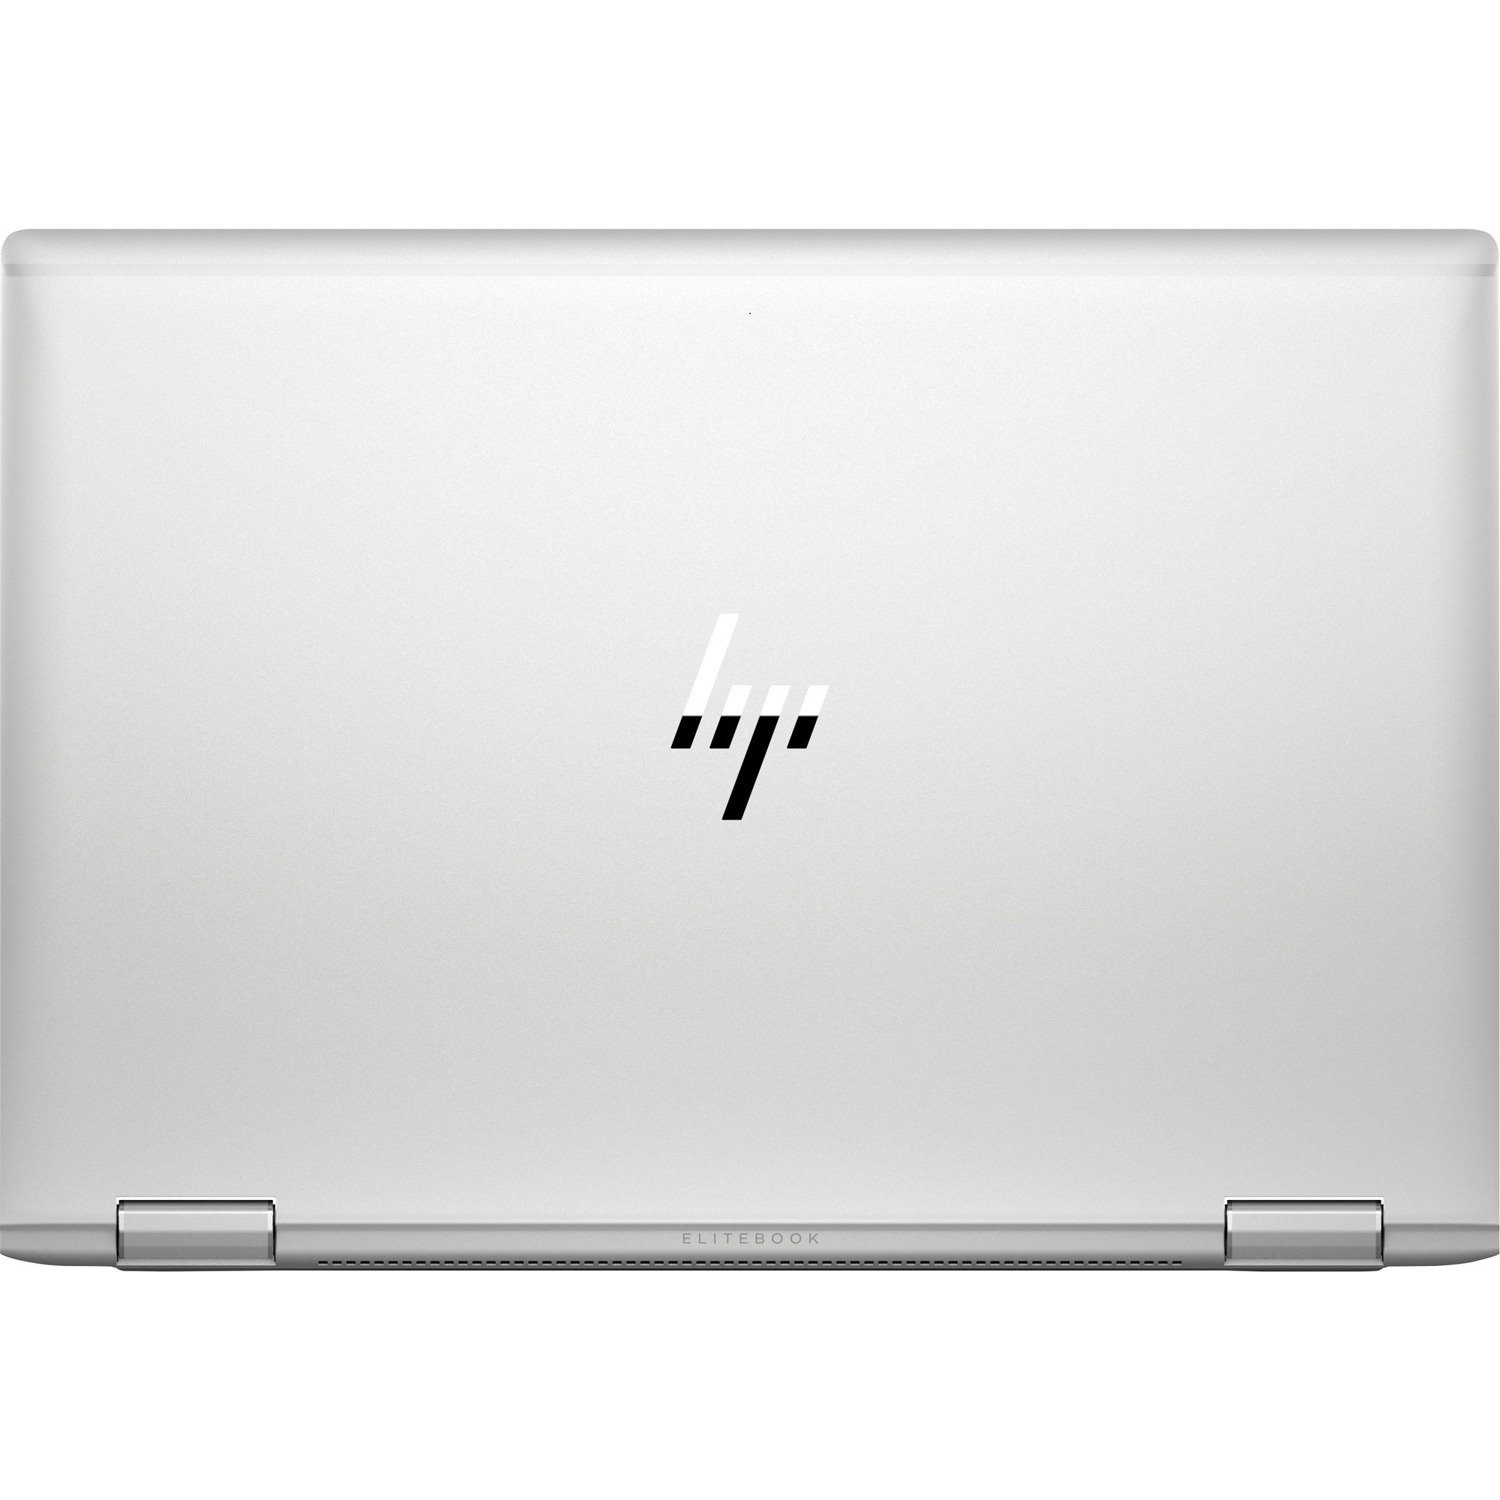 HP EliteBook x360 1040 G7 14" Touchscreen Convertible 2 in 1 Notebook - Intel Core i5 10th Gen i5-10210U Quad-core (4 Core) 1.60 GHz - 8 GB Total RAM - 256 GB SSD